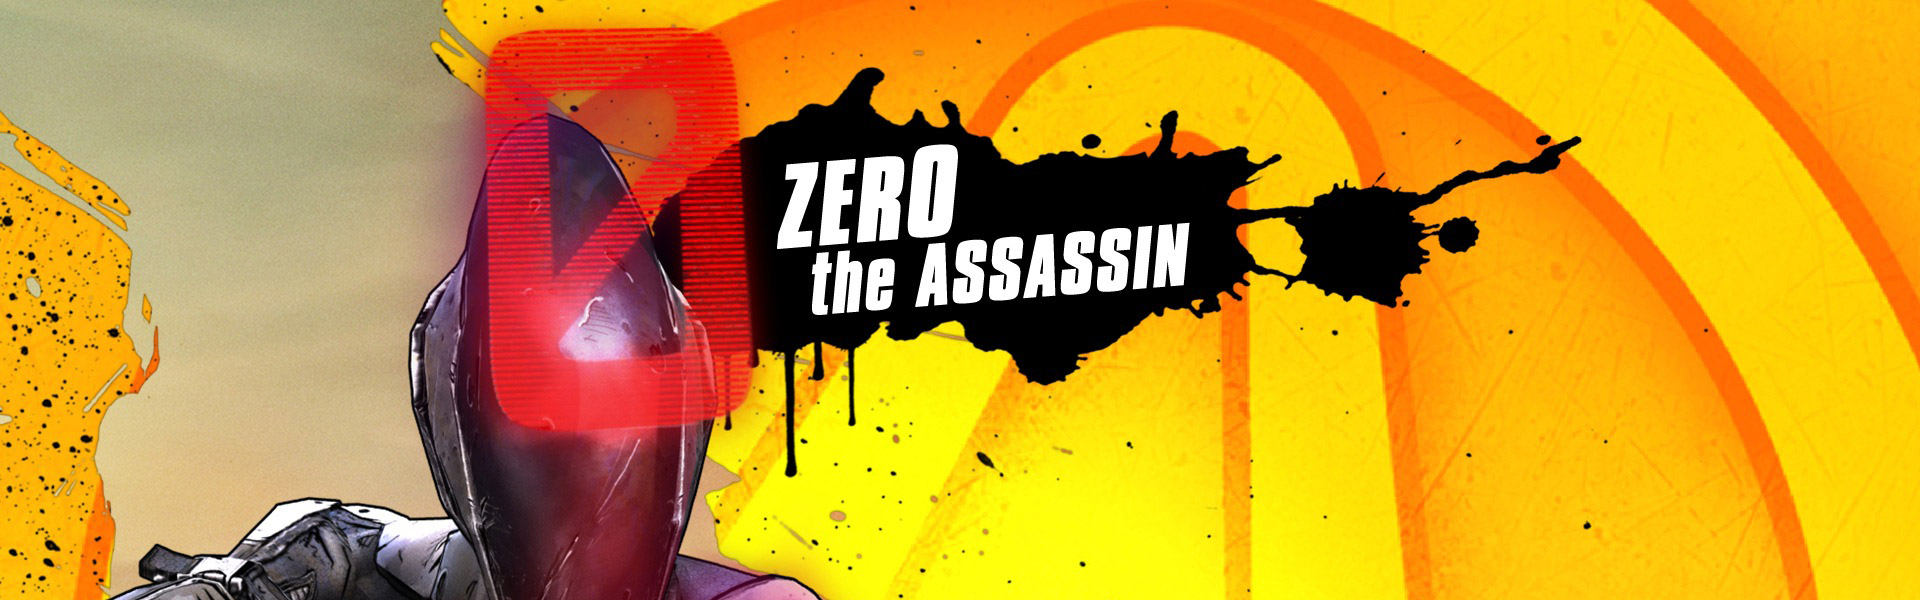 Zer0 the Assassin